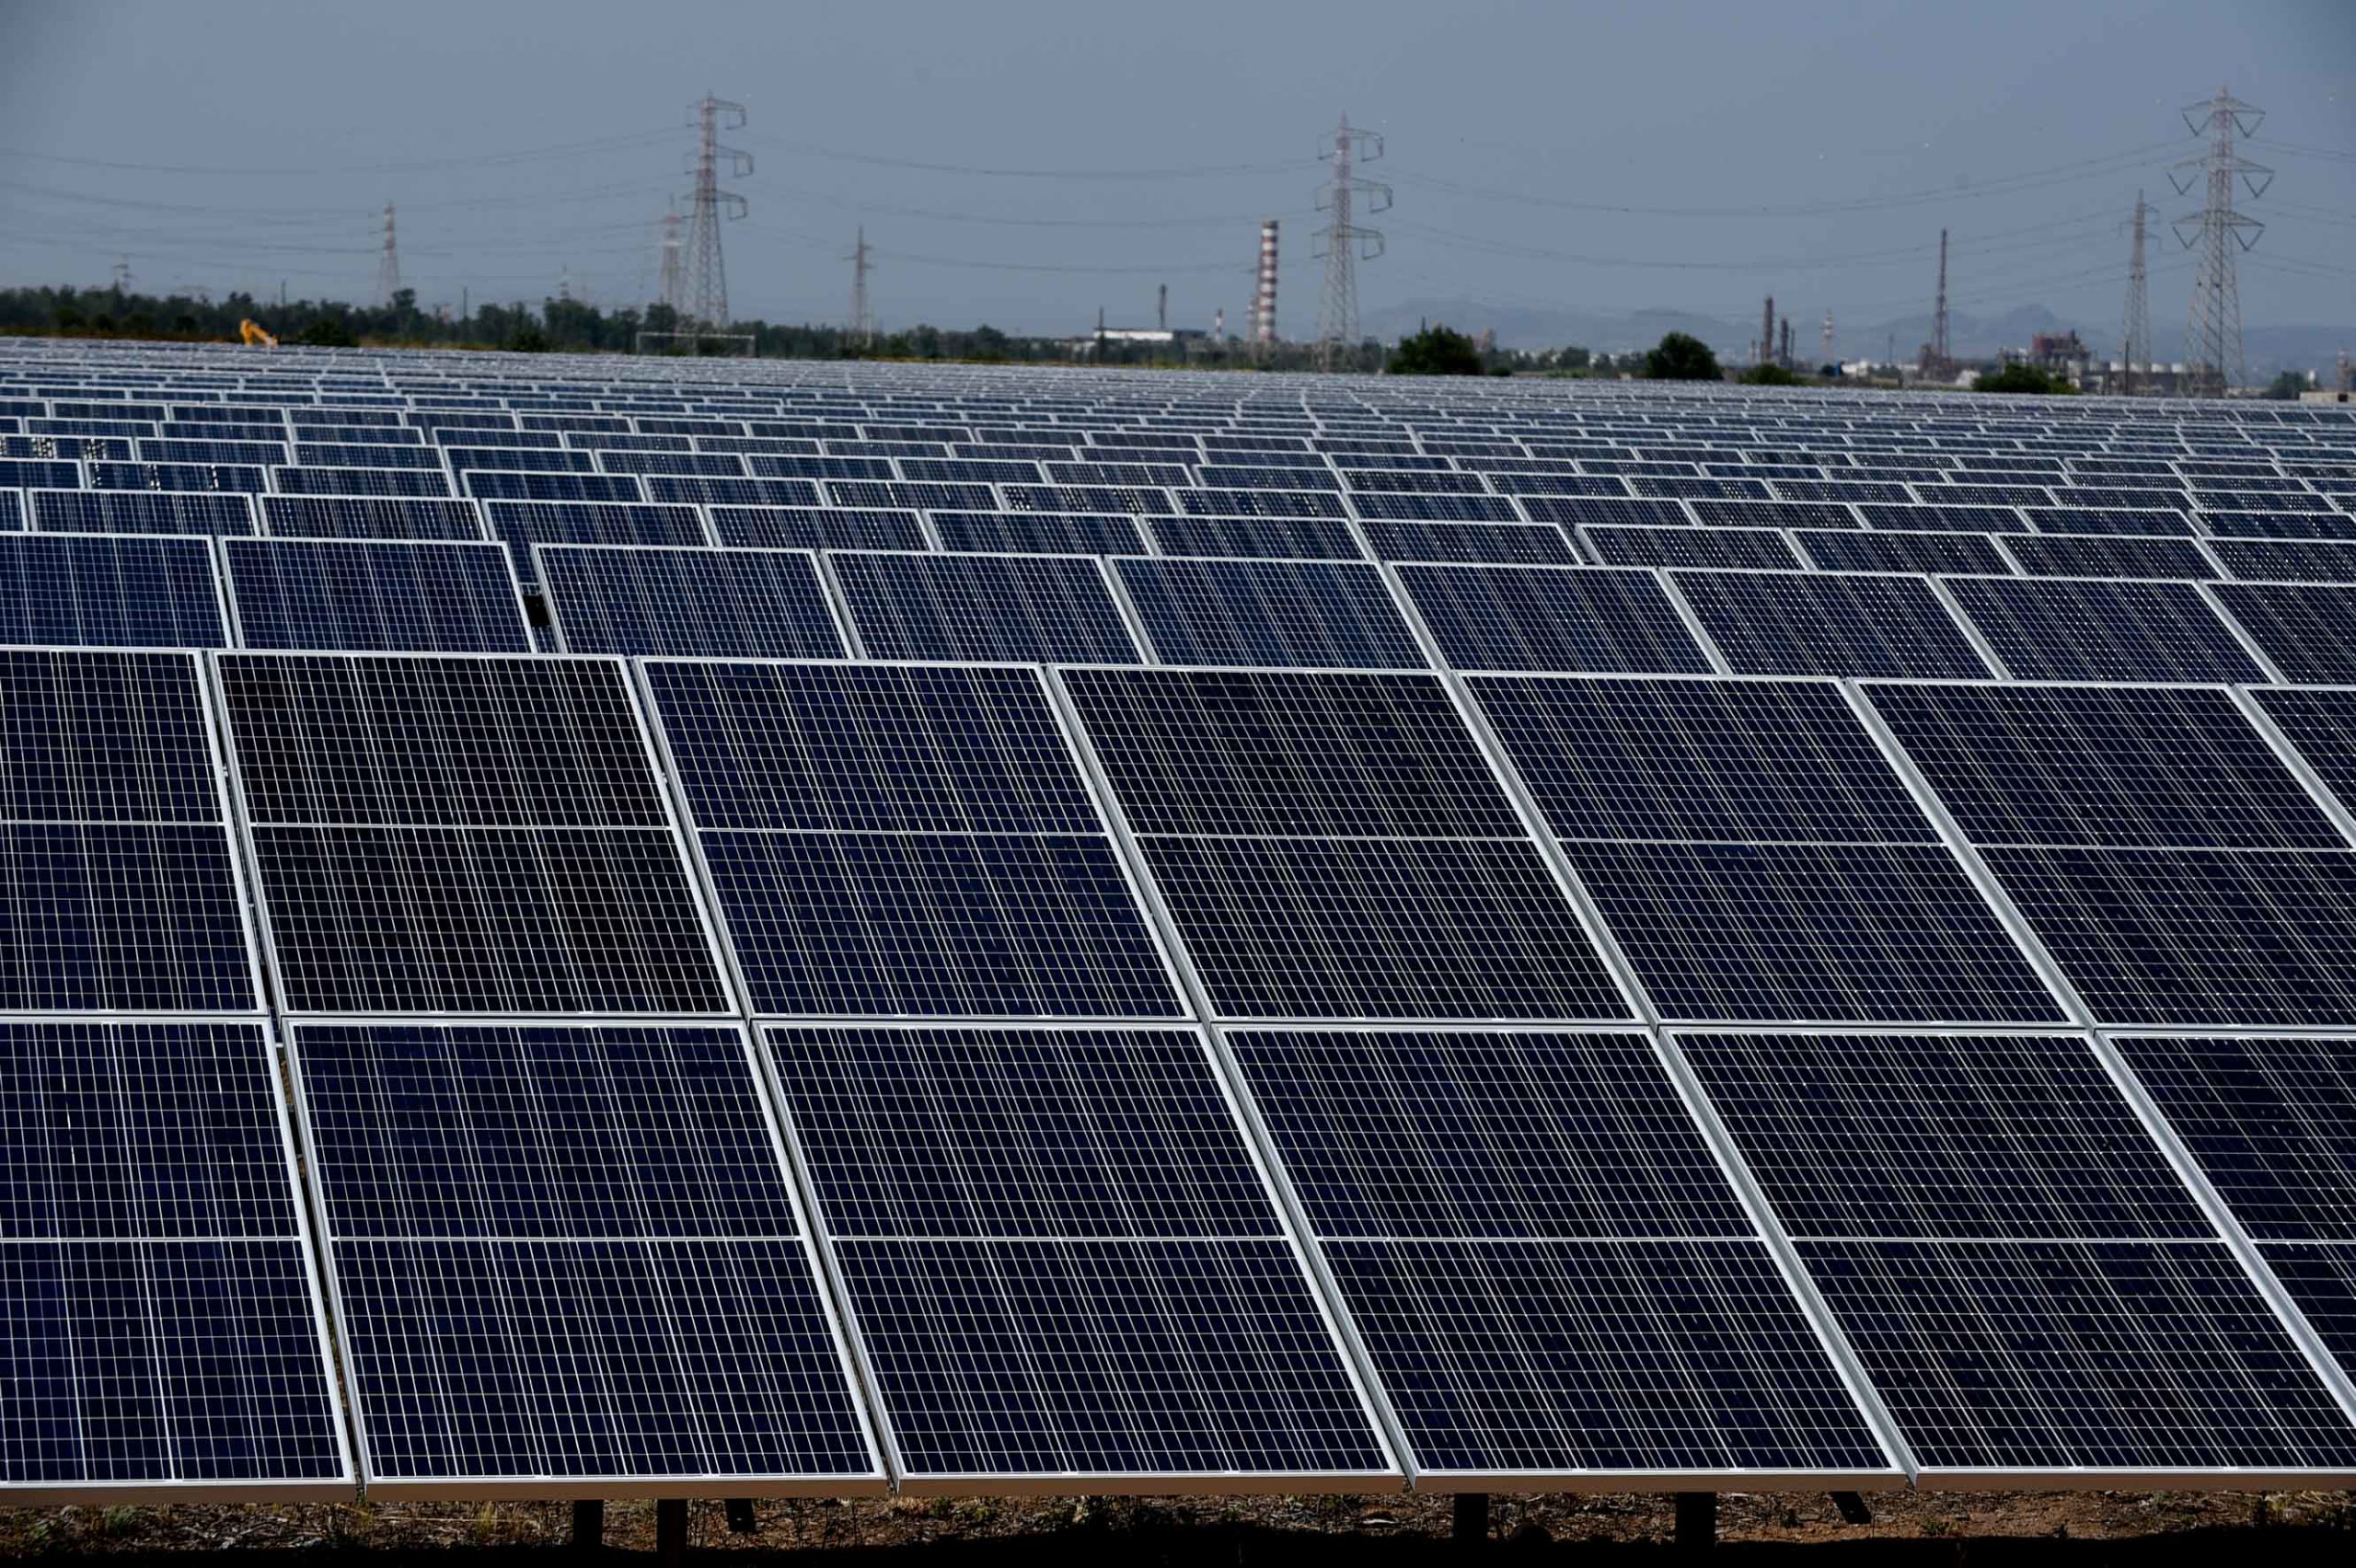 Energia verde, Nuveen Glennmont acquisisce 7 progetti solari fotovoltaici nel Sud Italia 